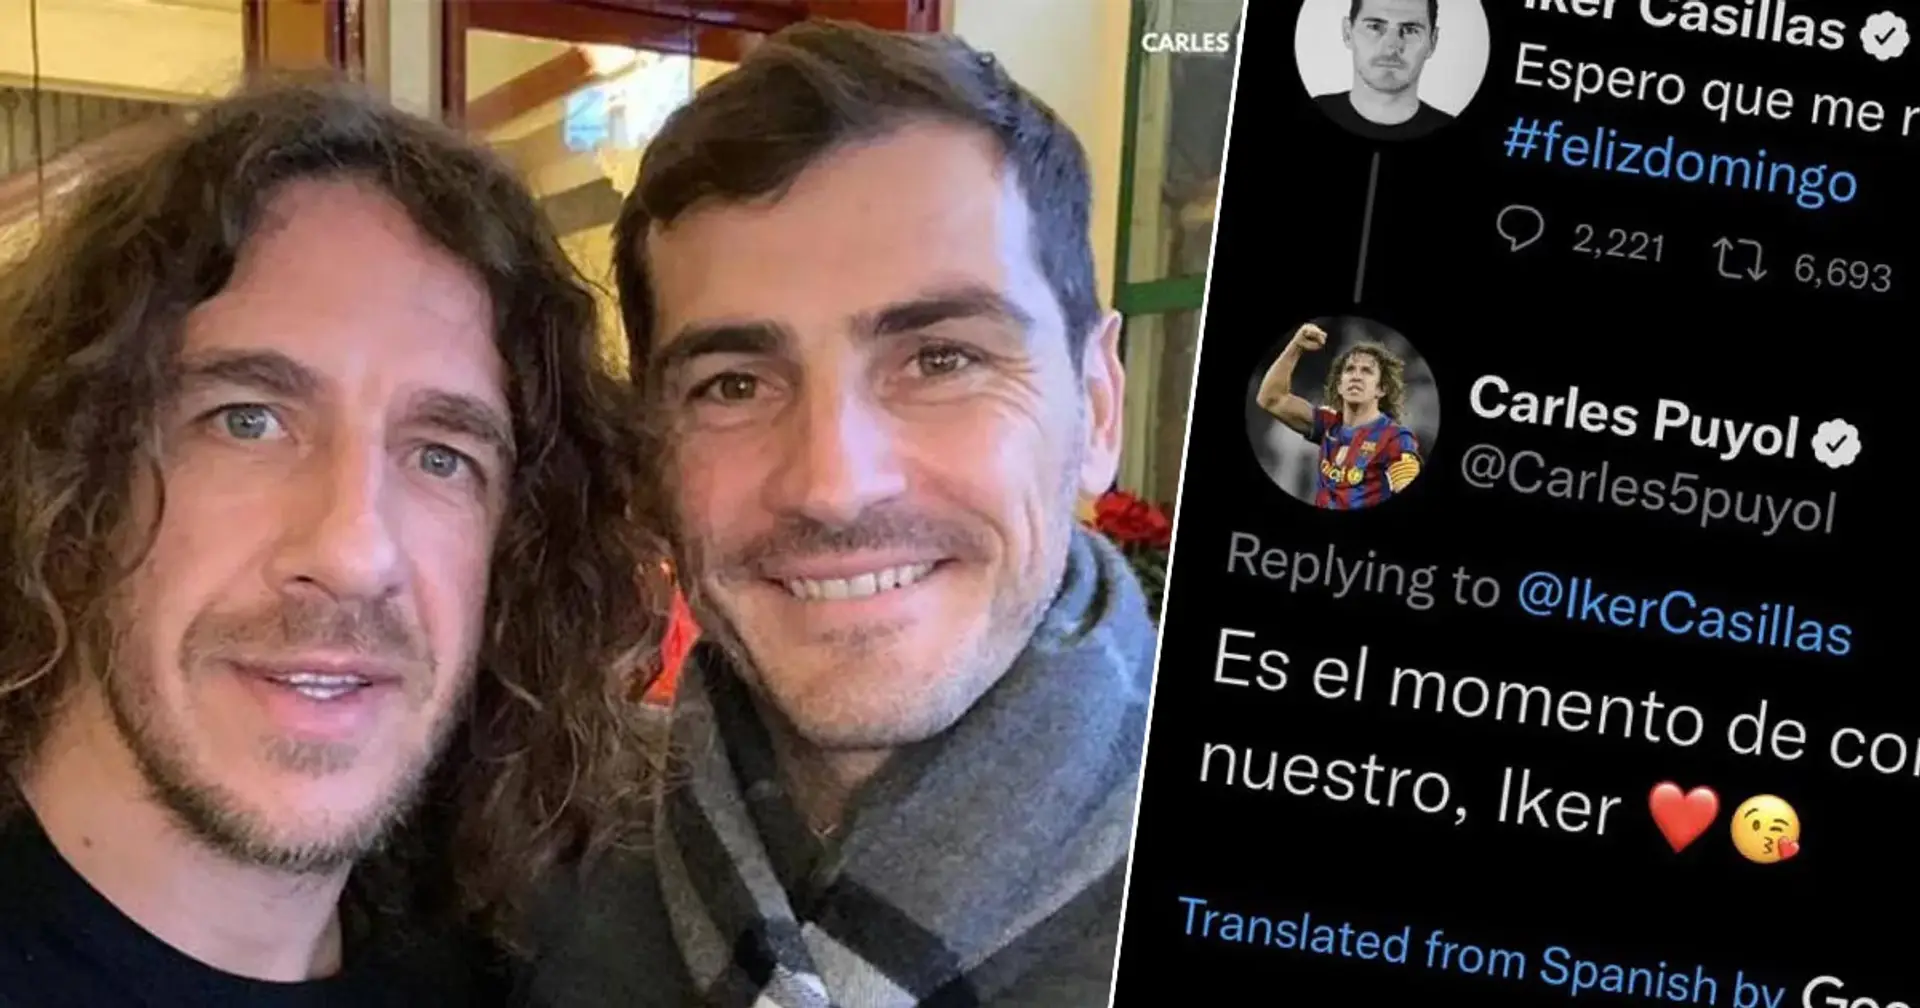 "Une mauvaise blague ": Puyol s'excuse d'avoir plaisanté avec Casillas 